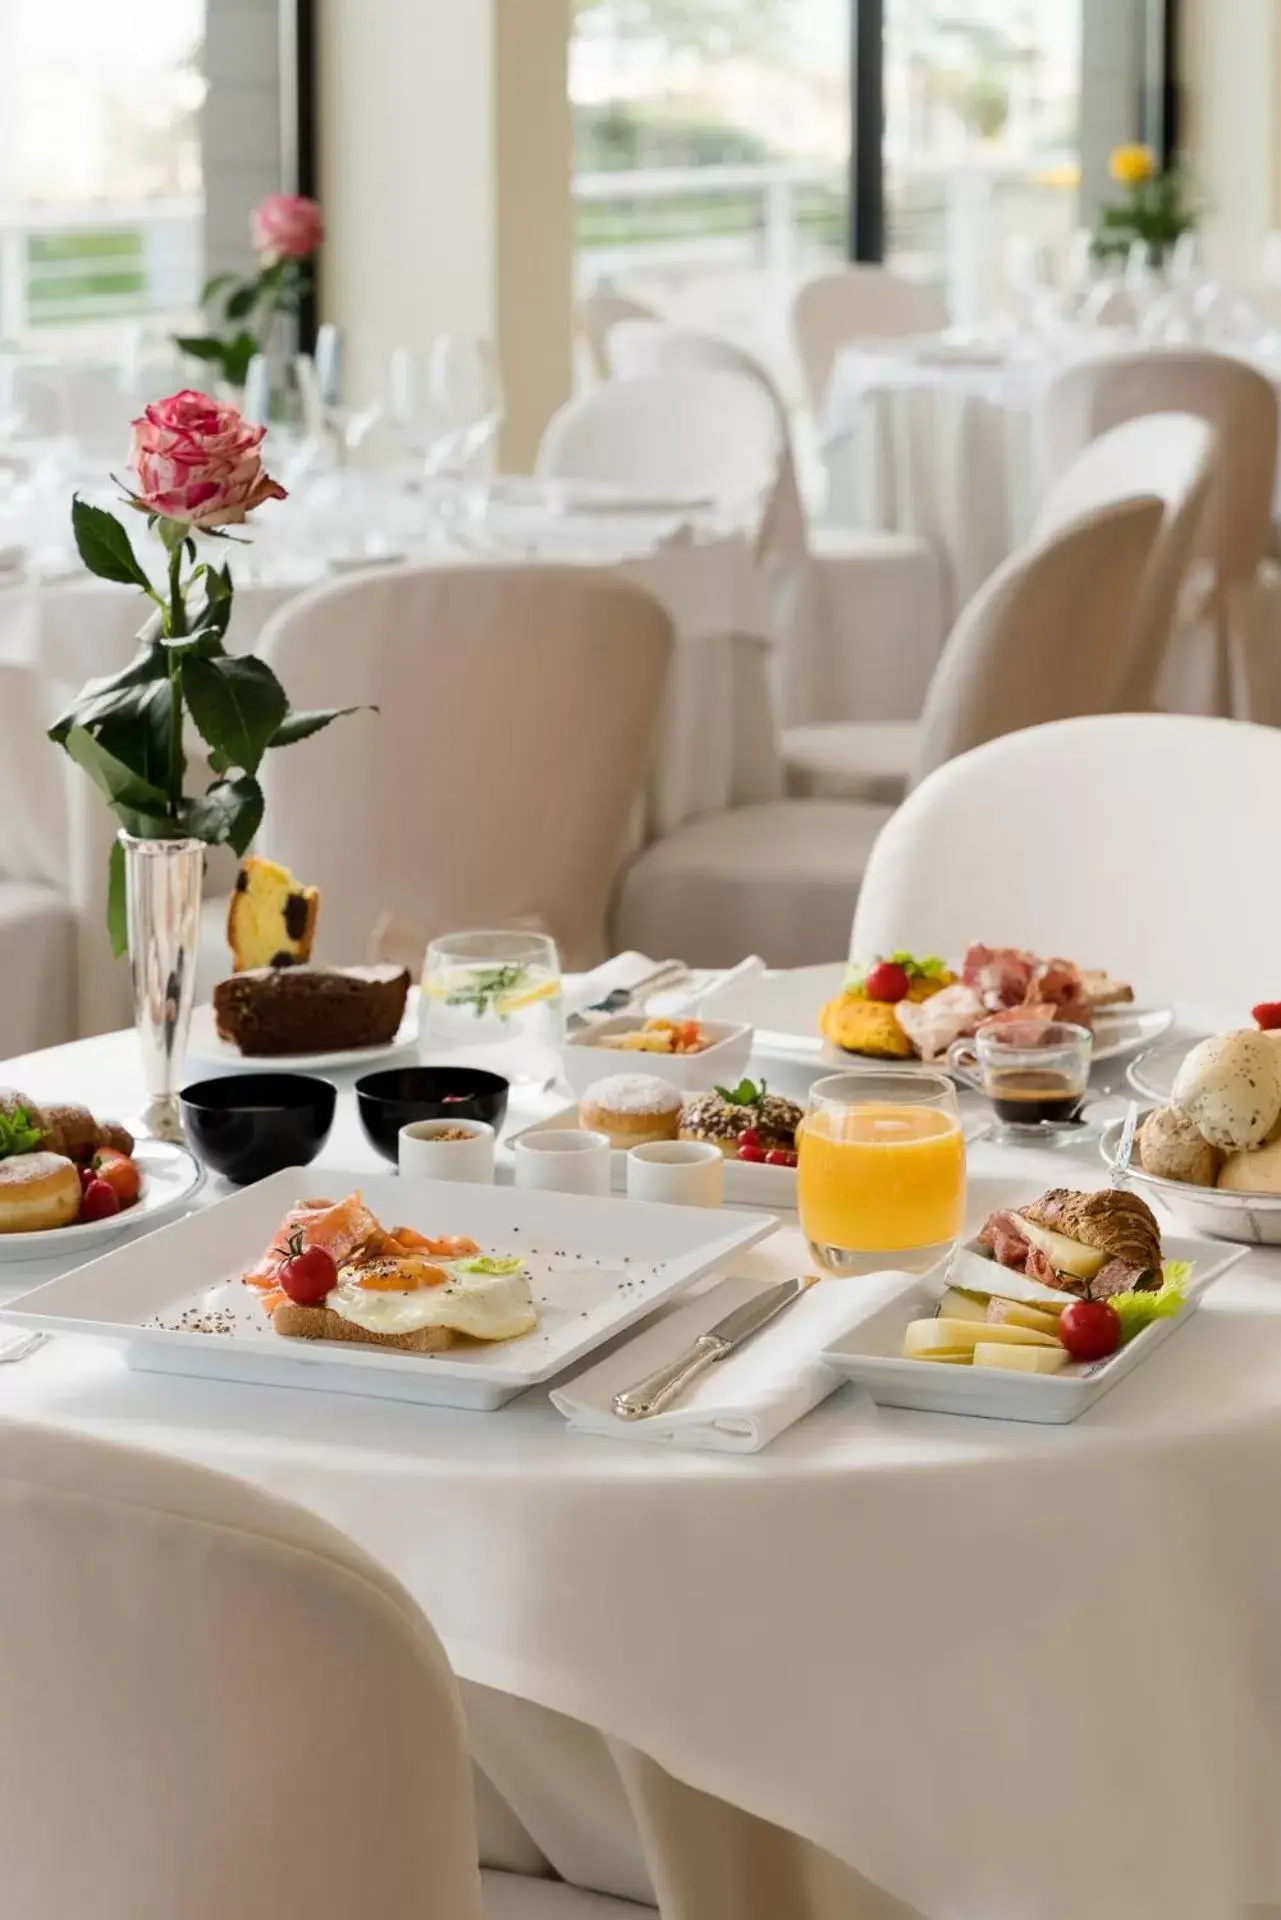 Buffet breakfast in National Hotel